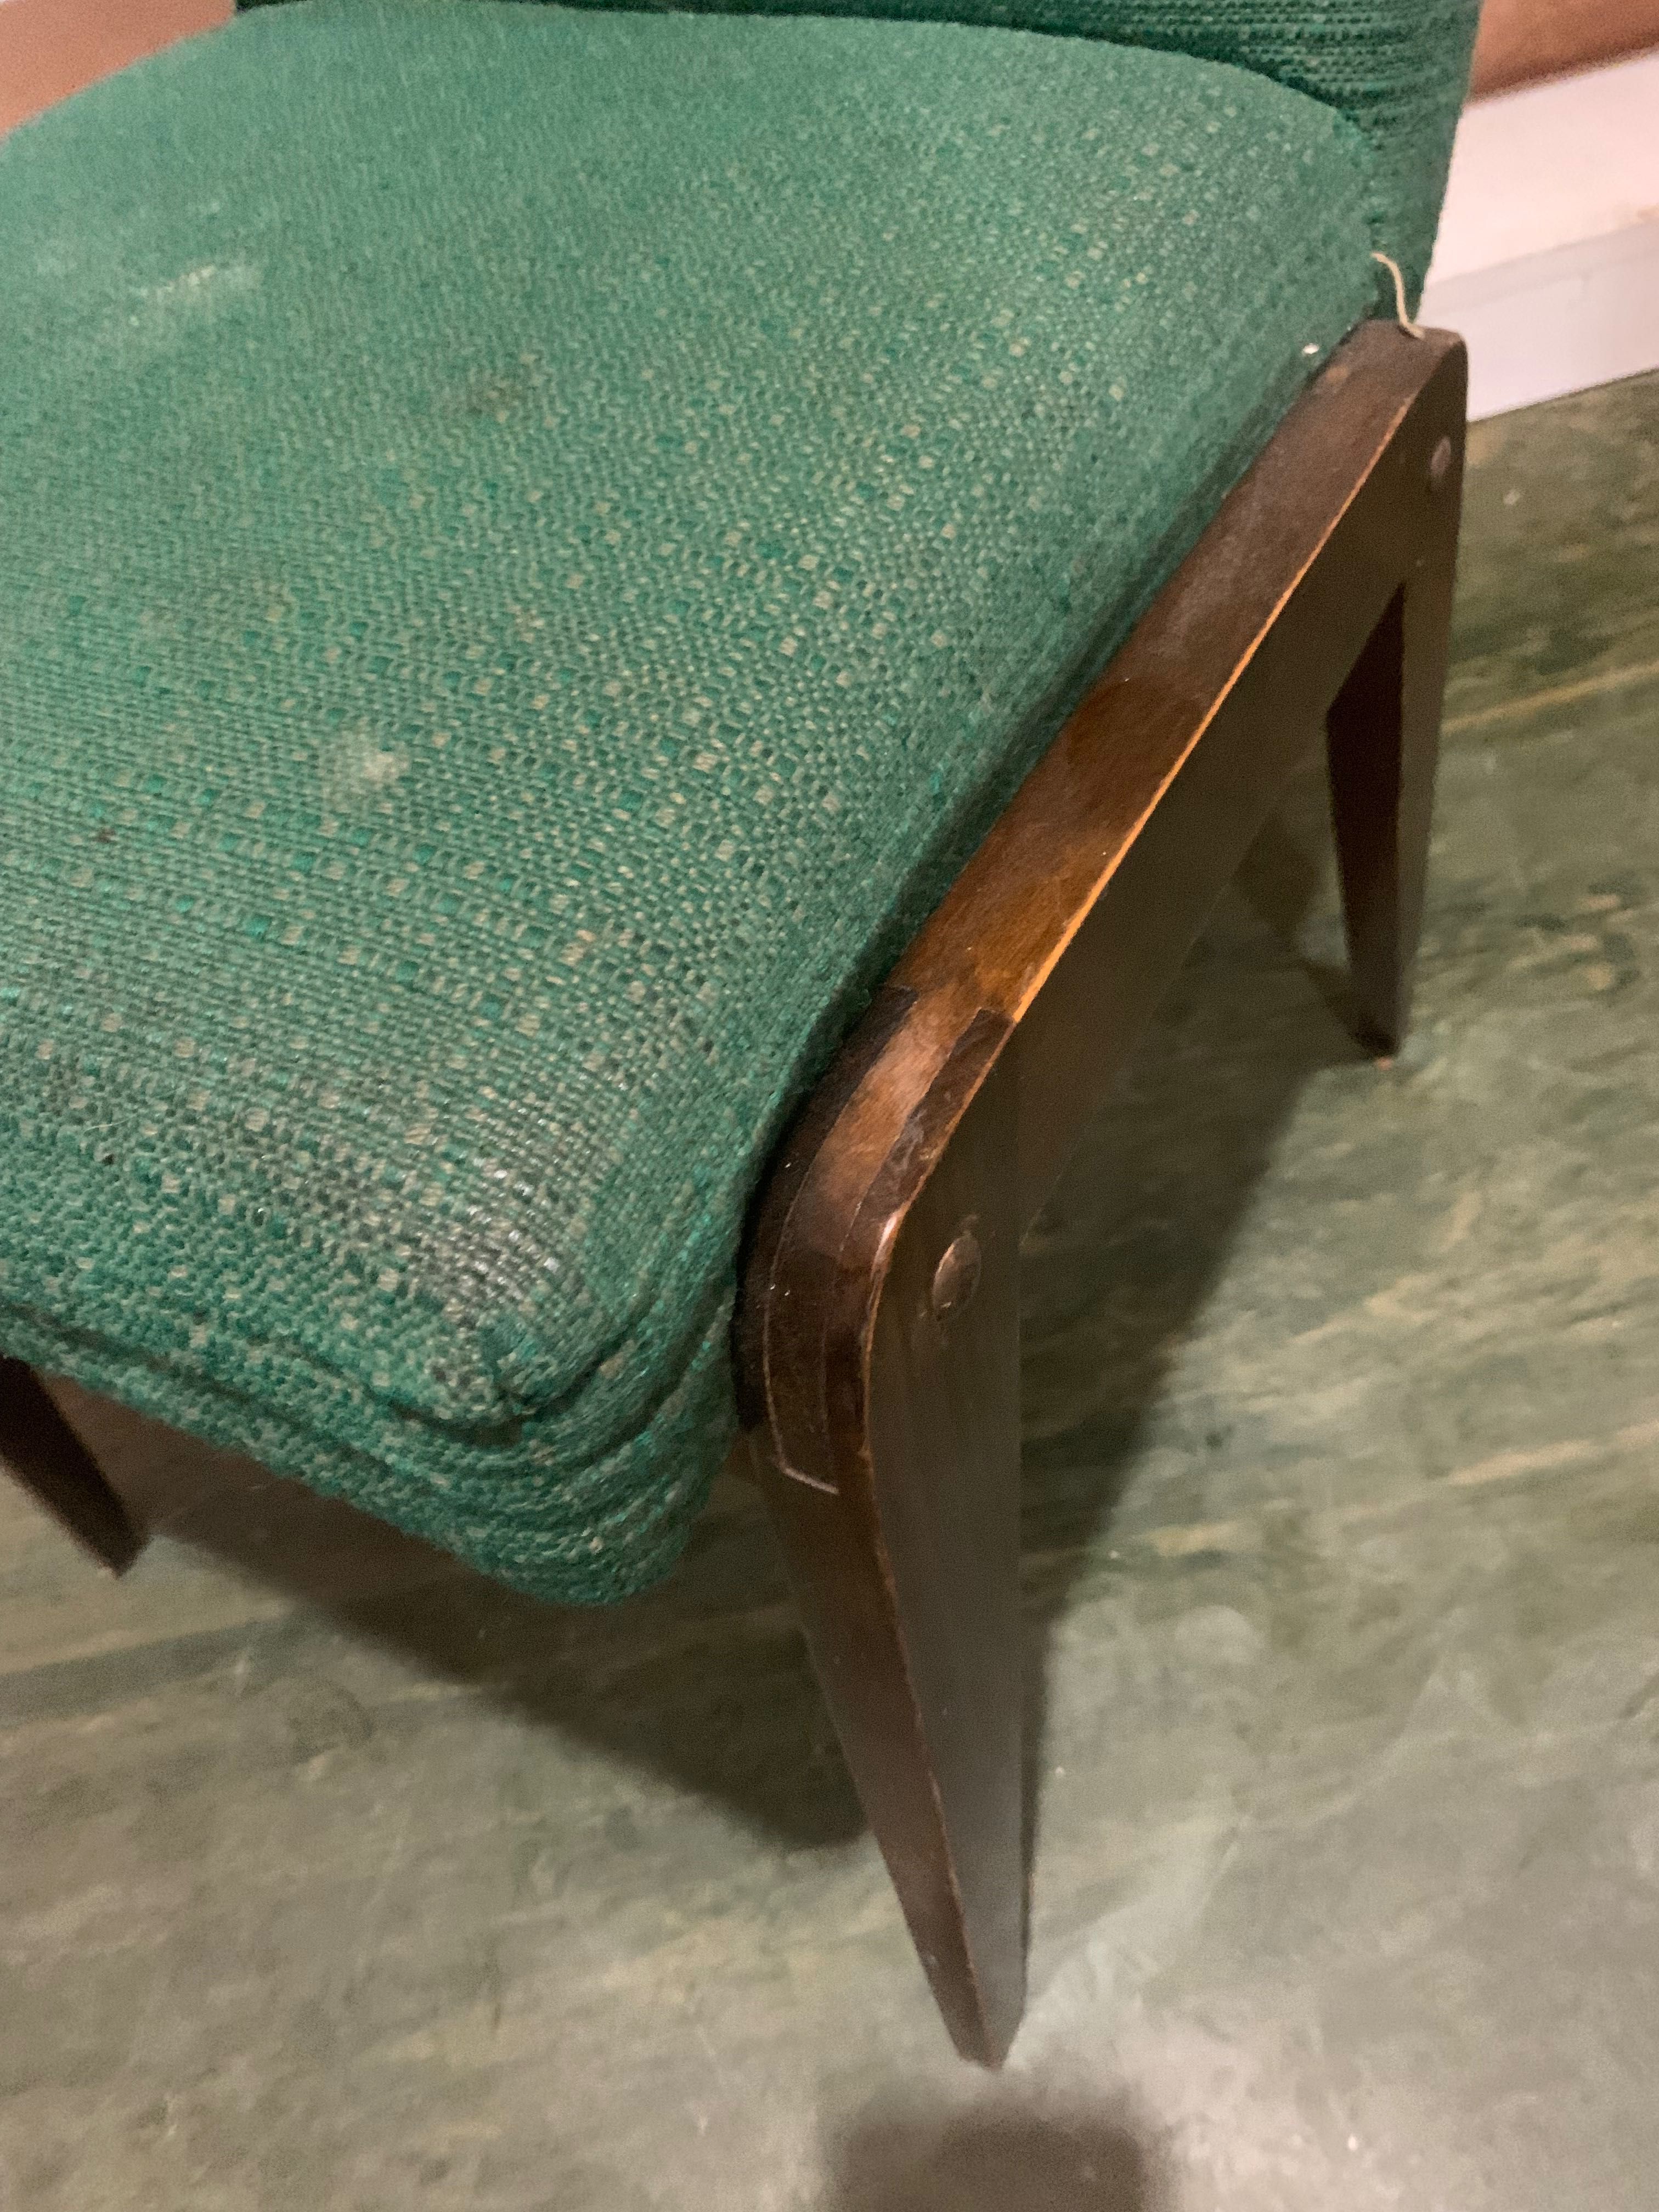 Krzesło prl patyczak lata 90 stare meble